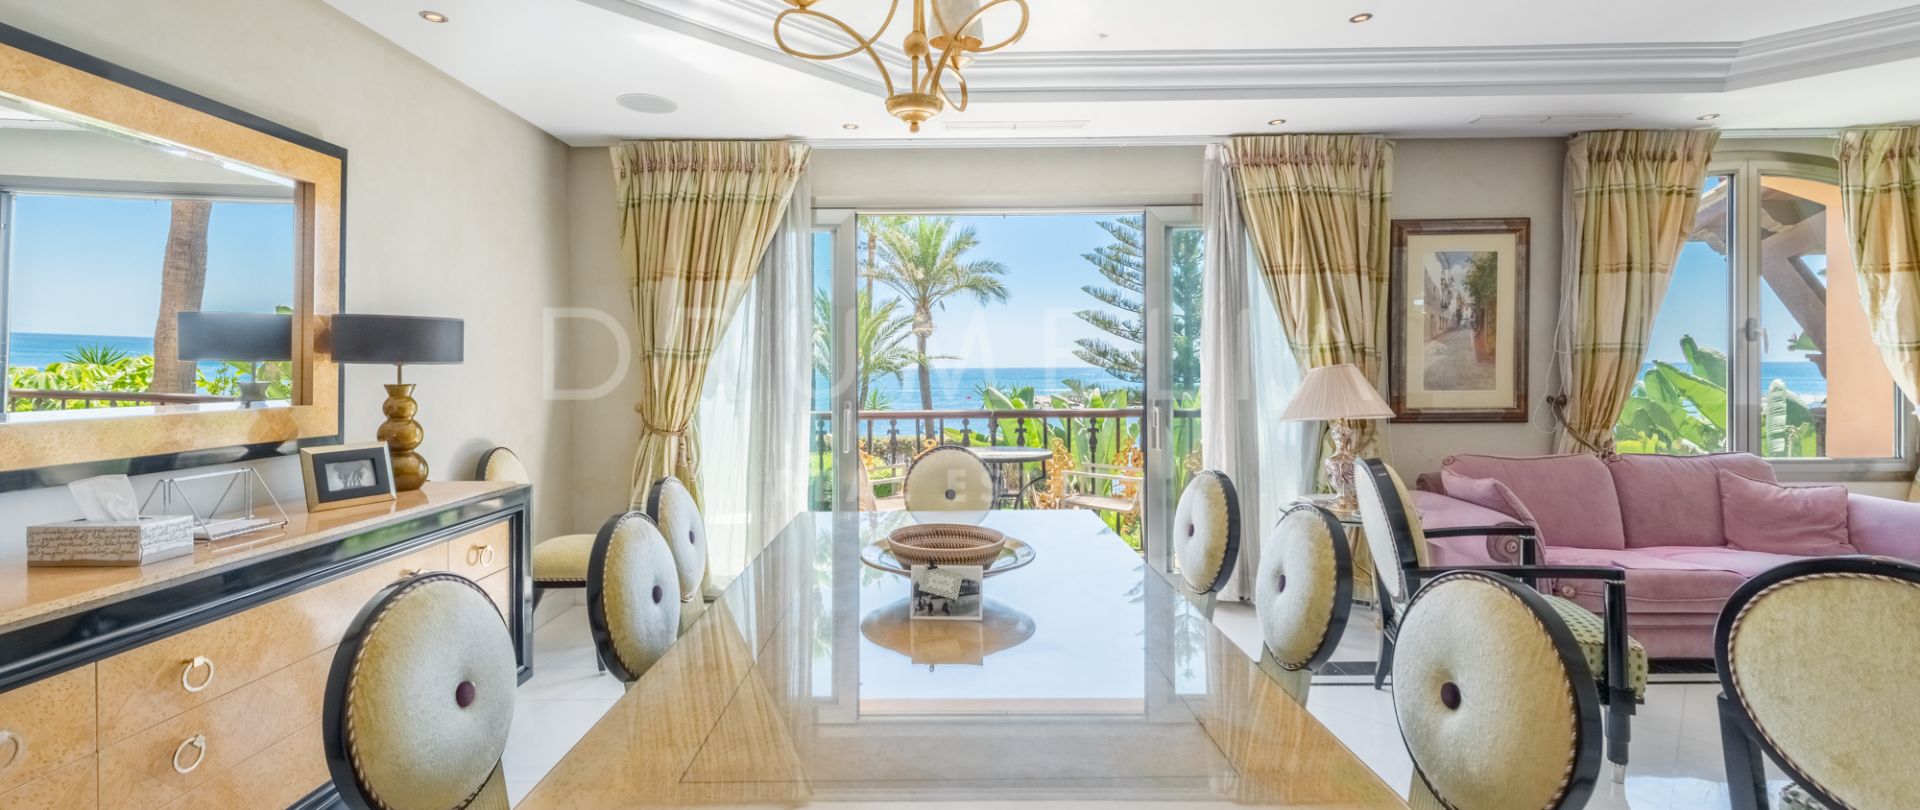 Luxe appartement aan het strand met prachtig uitzicht op zee in Puerto Banus, Marbella